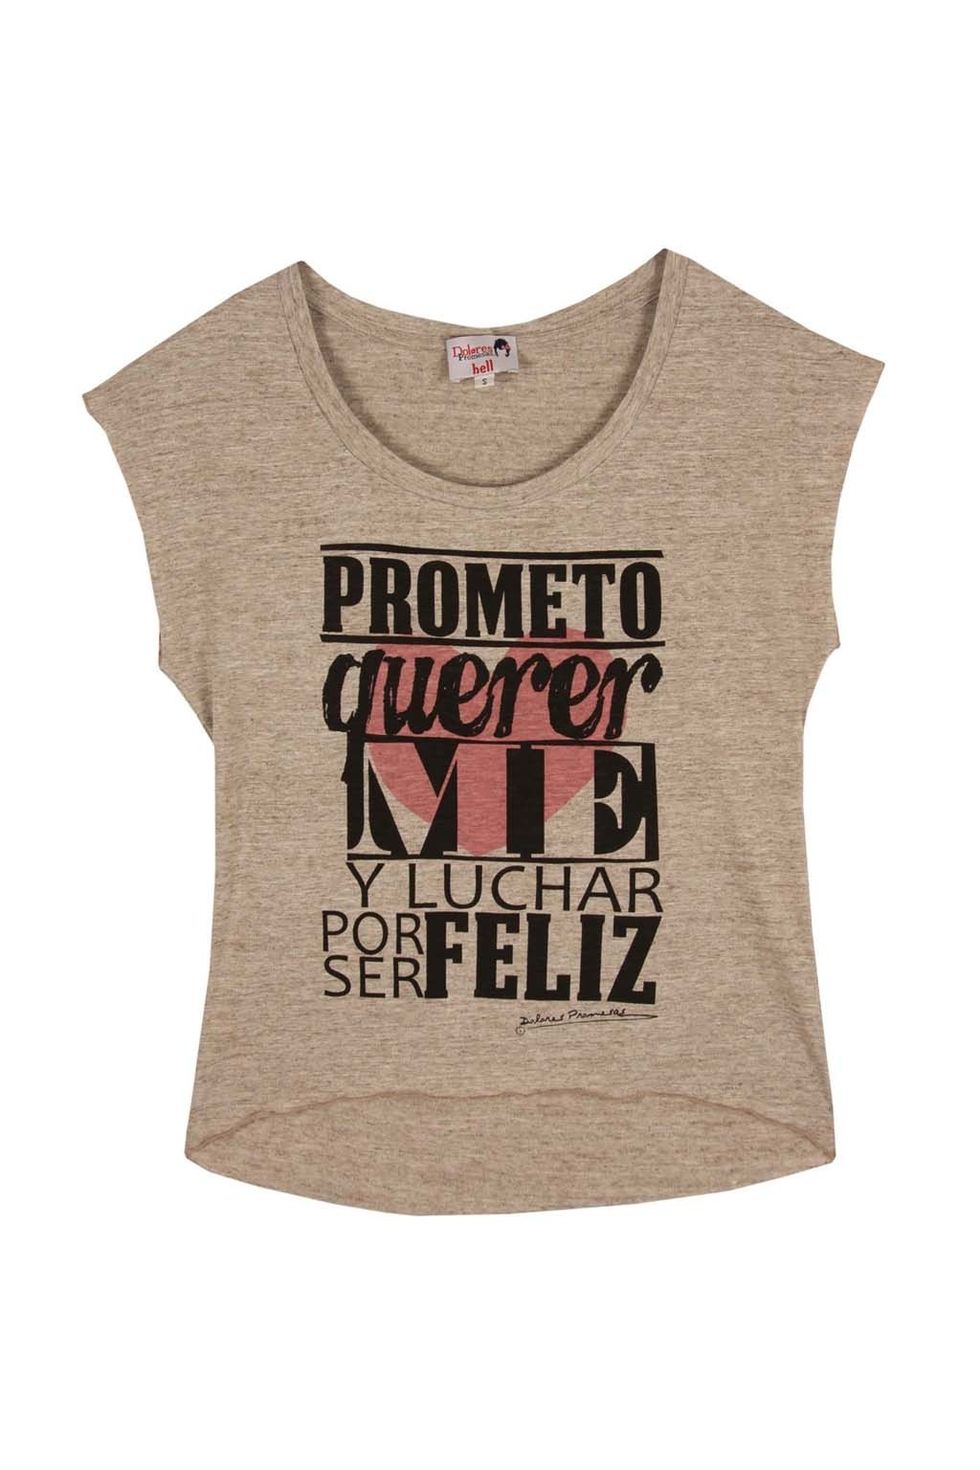 <p>Camiseta de&nbsp;<strong>Dolores Promesas&nbsp;</strong>(25 €).</p>